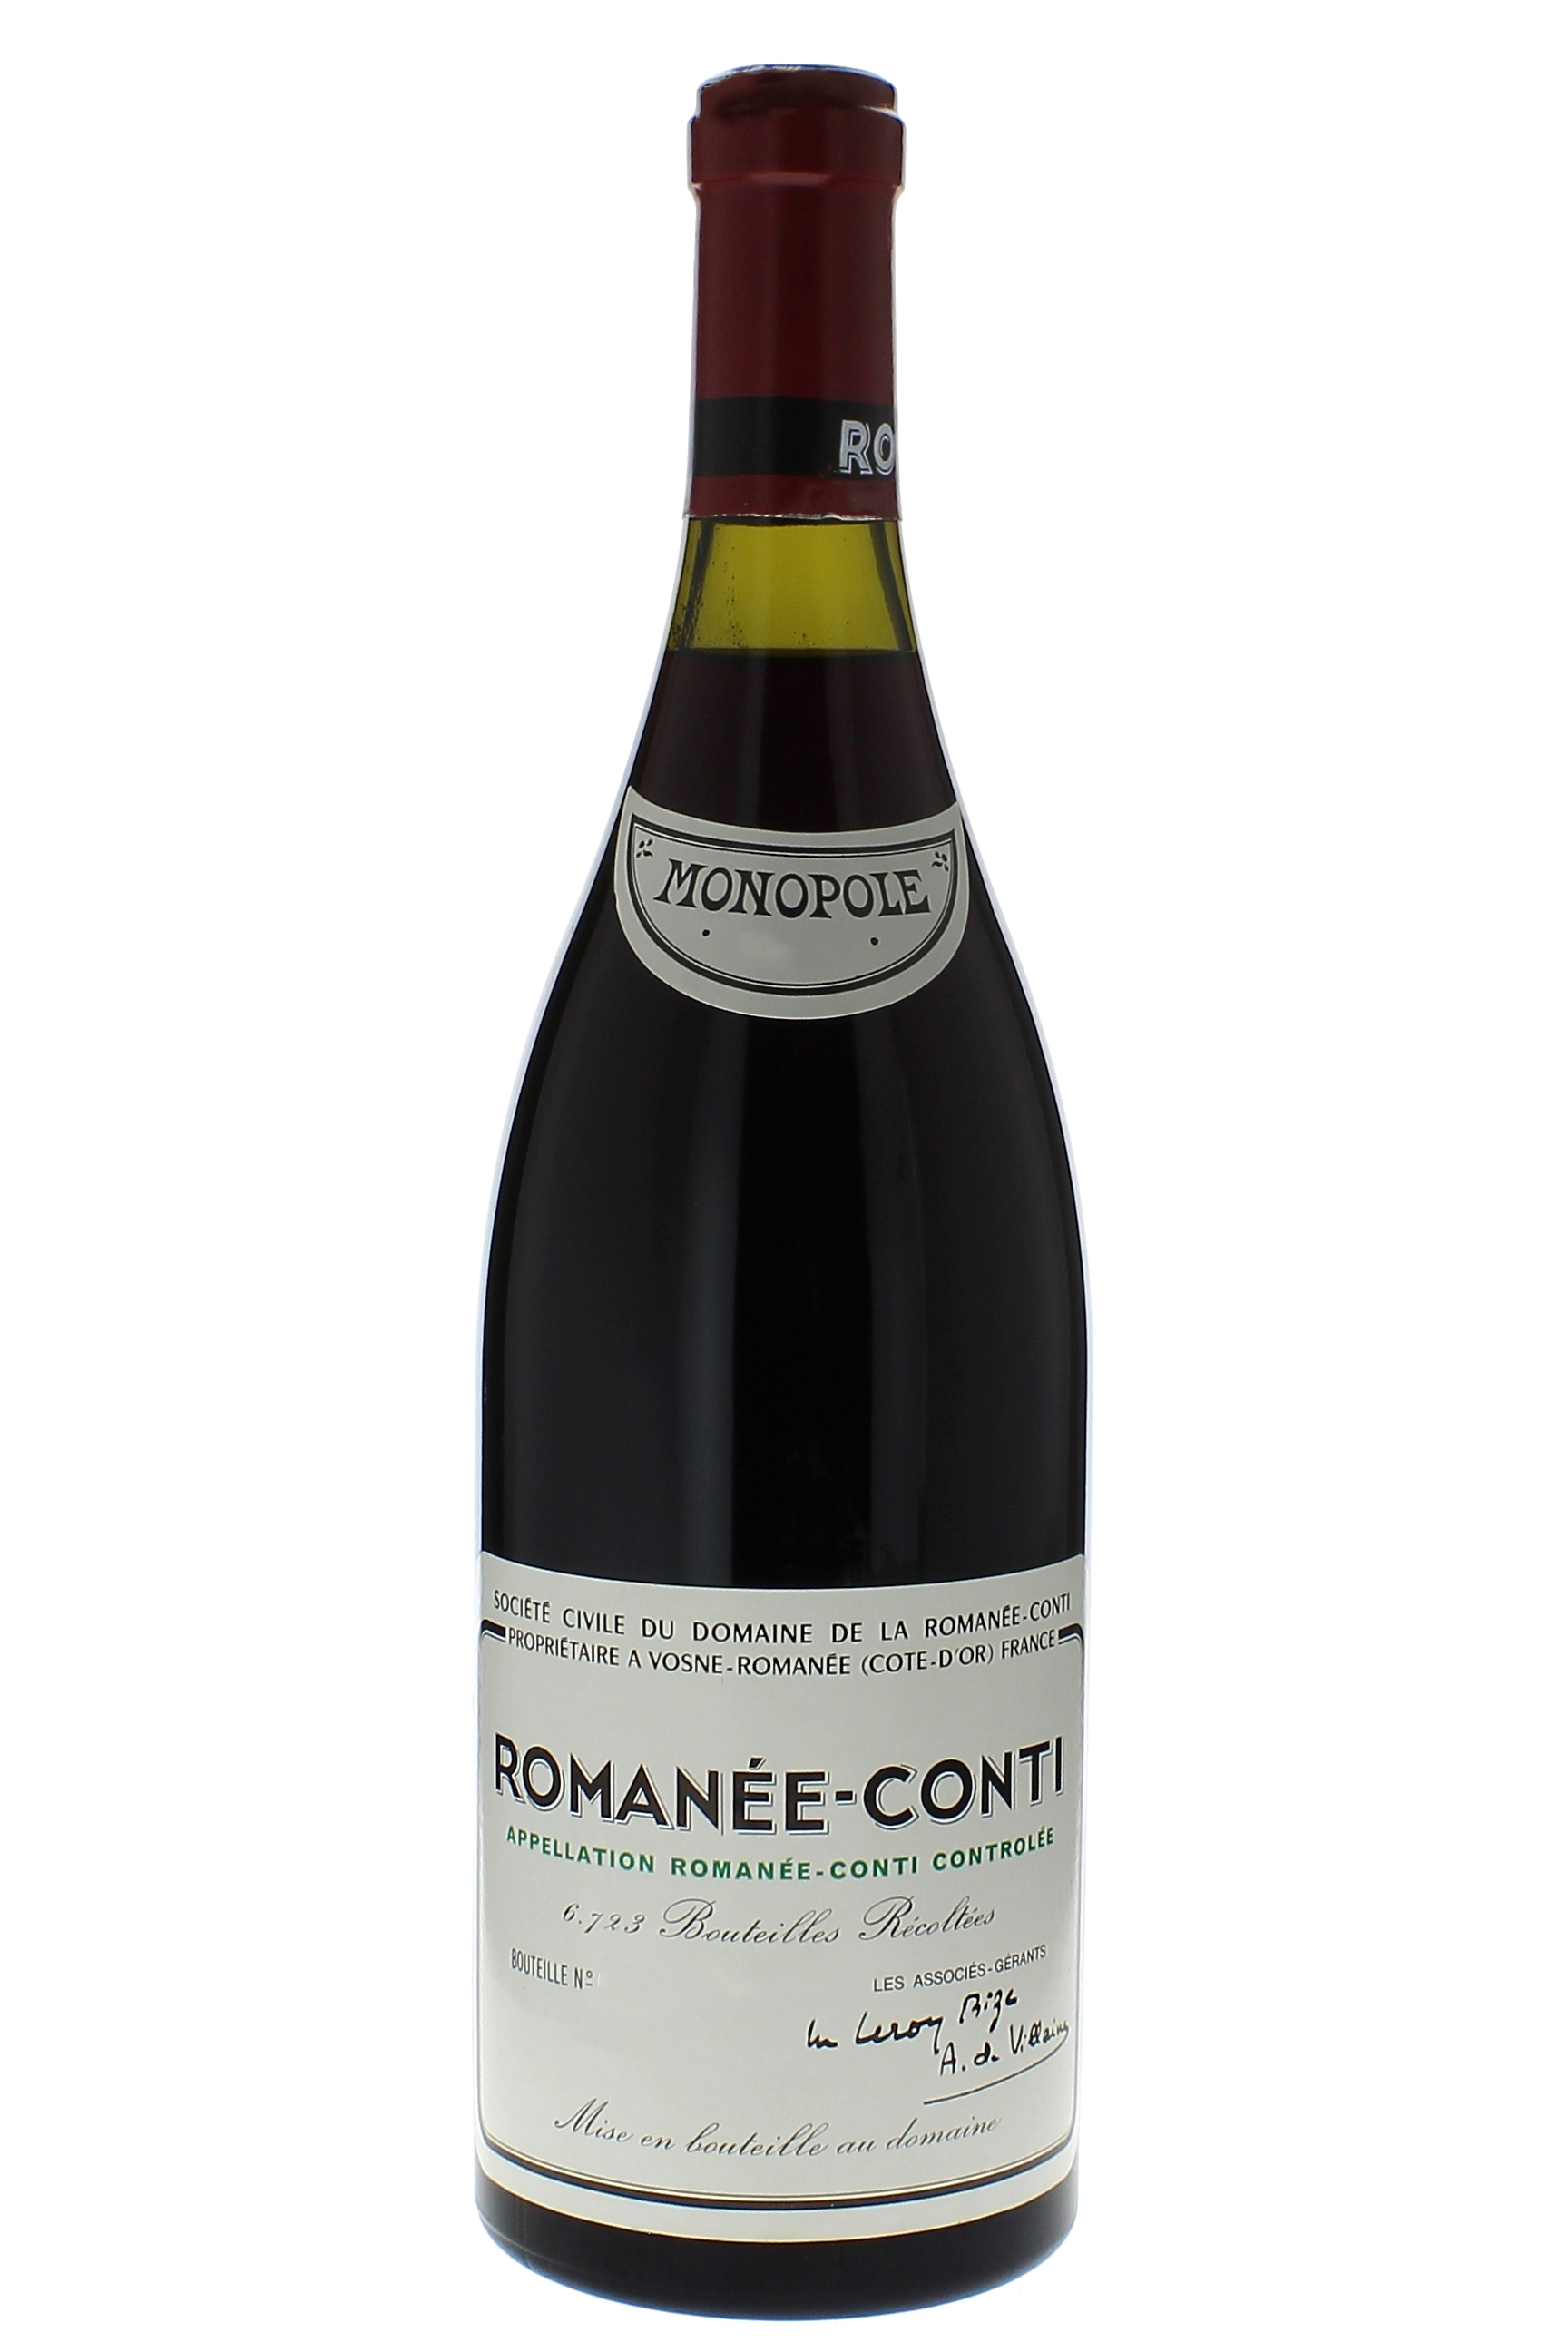 Romane conti grand cru 1972 Domaine ROMANEE CONTI, Bourgogne rouge